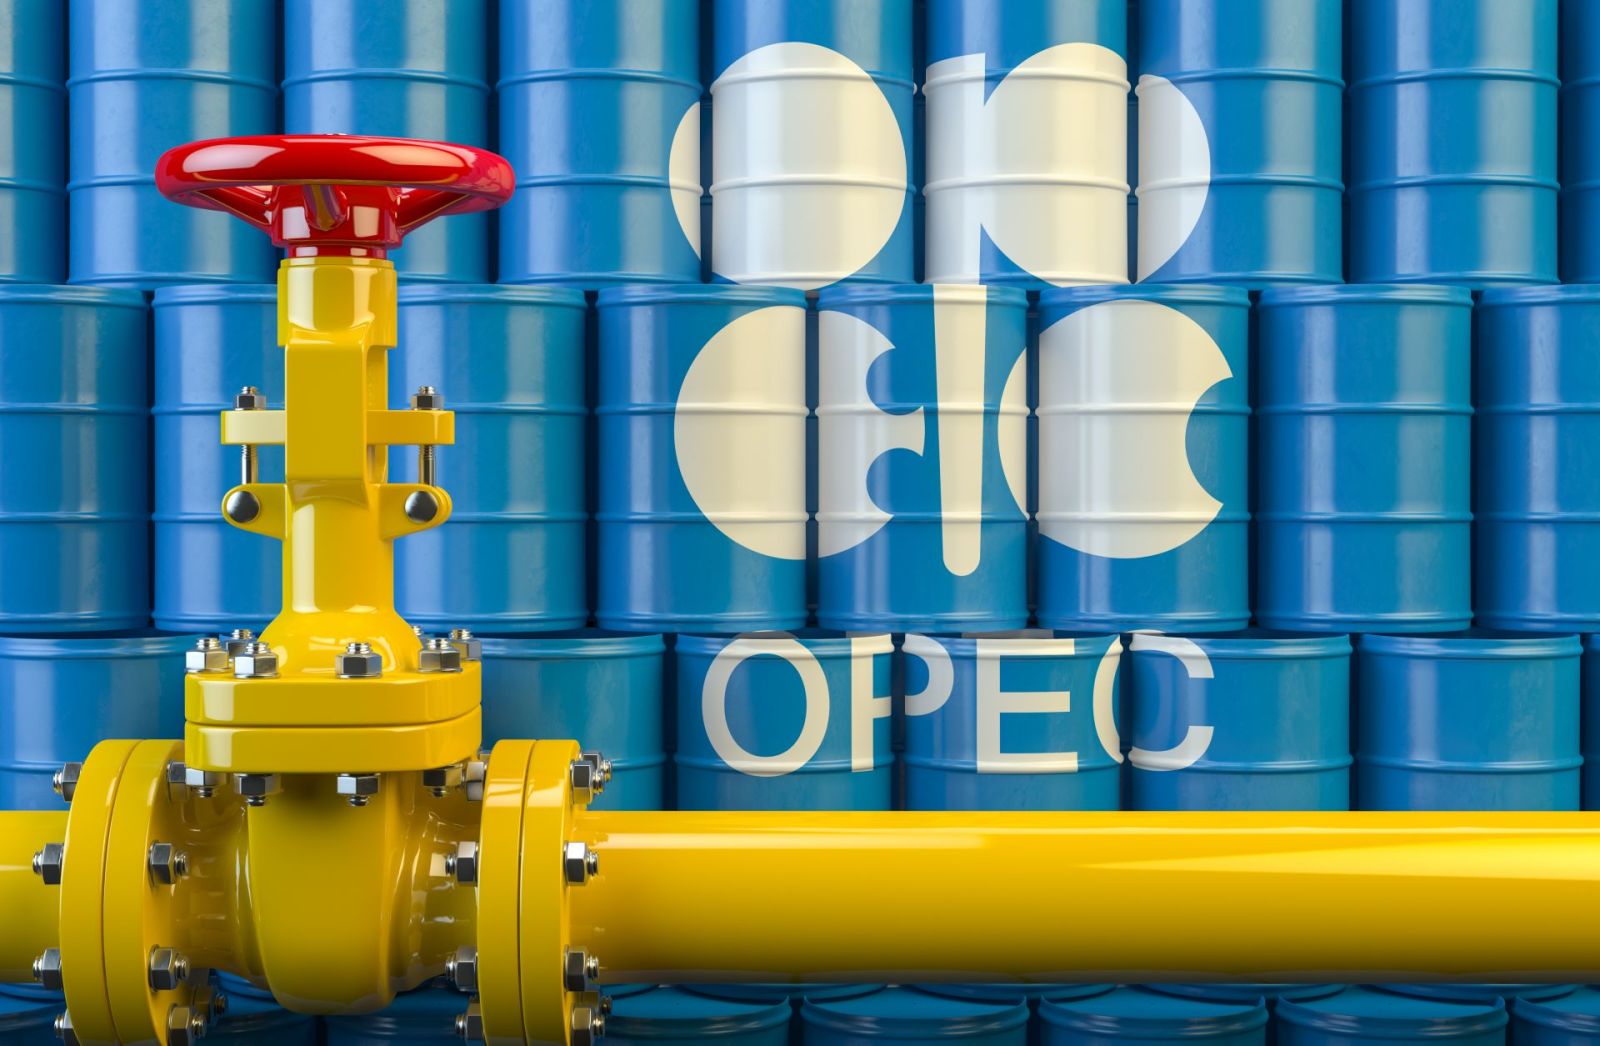 3 ölkə neft hasilatına görə kompensasiya cədvəlini OPEC-ə təqdim edəcək